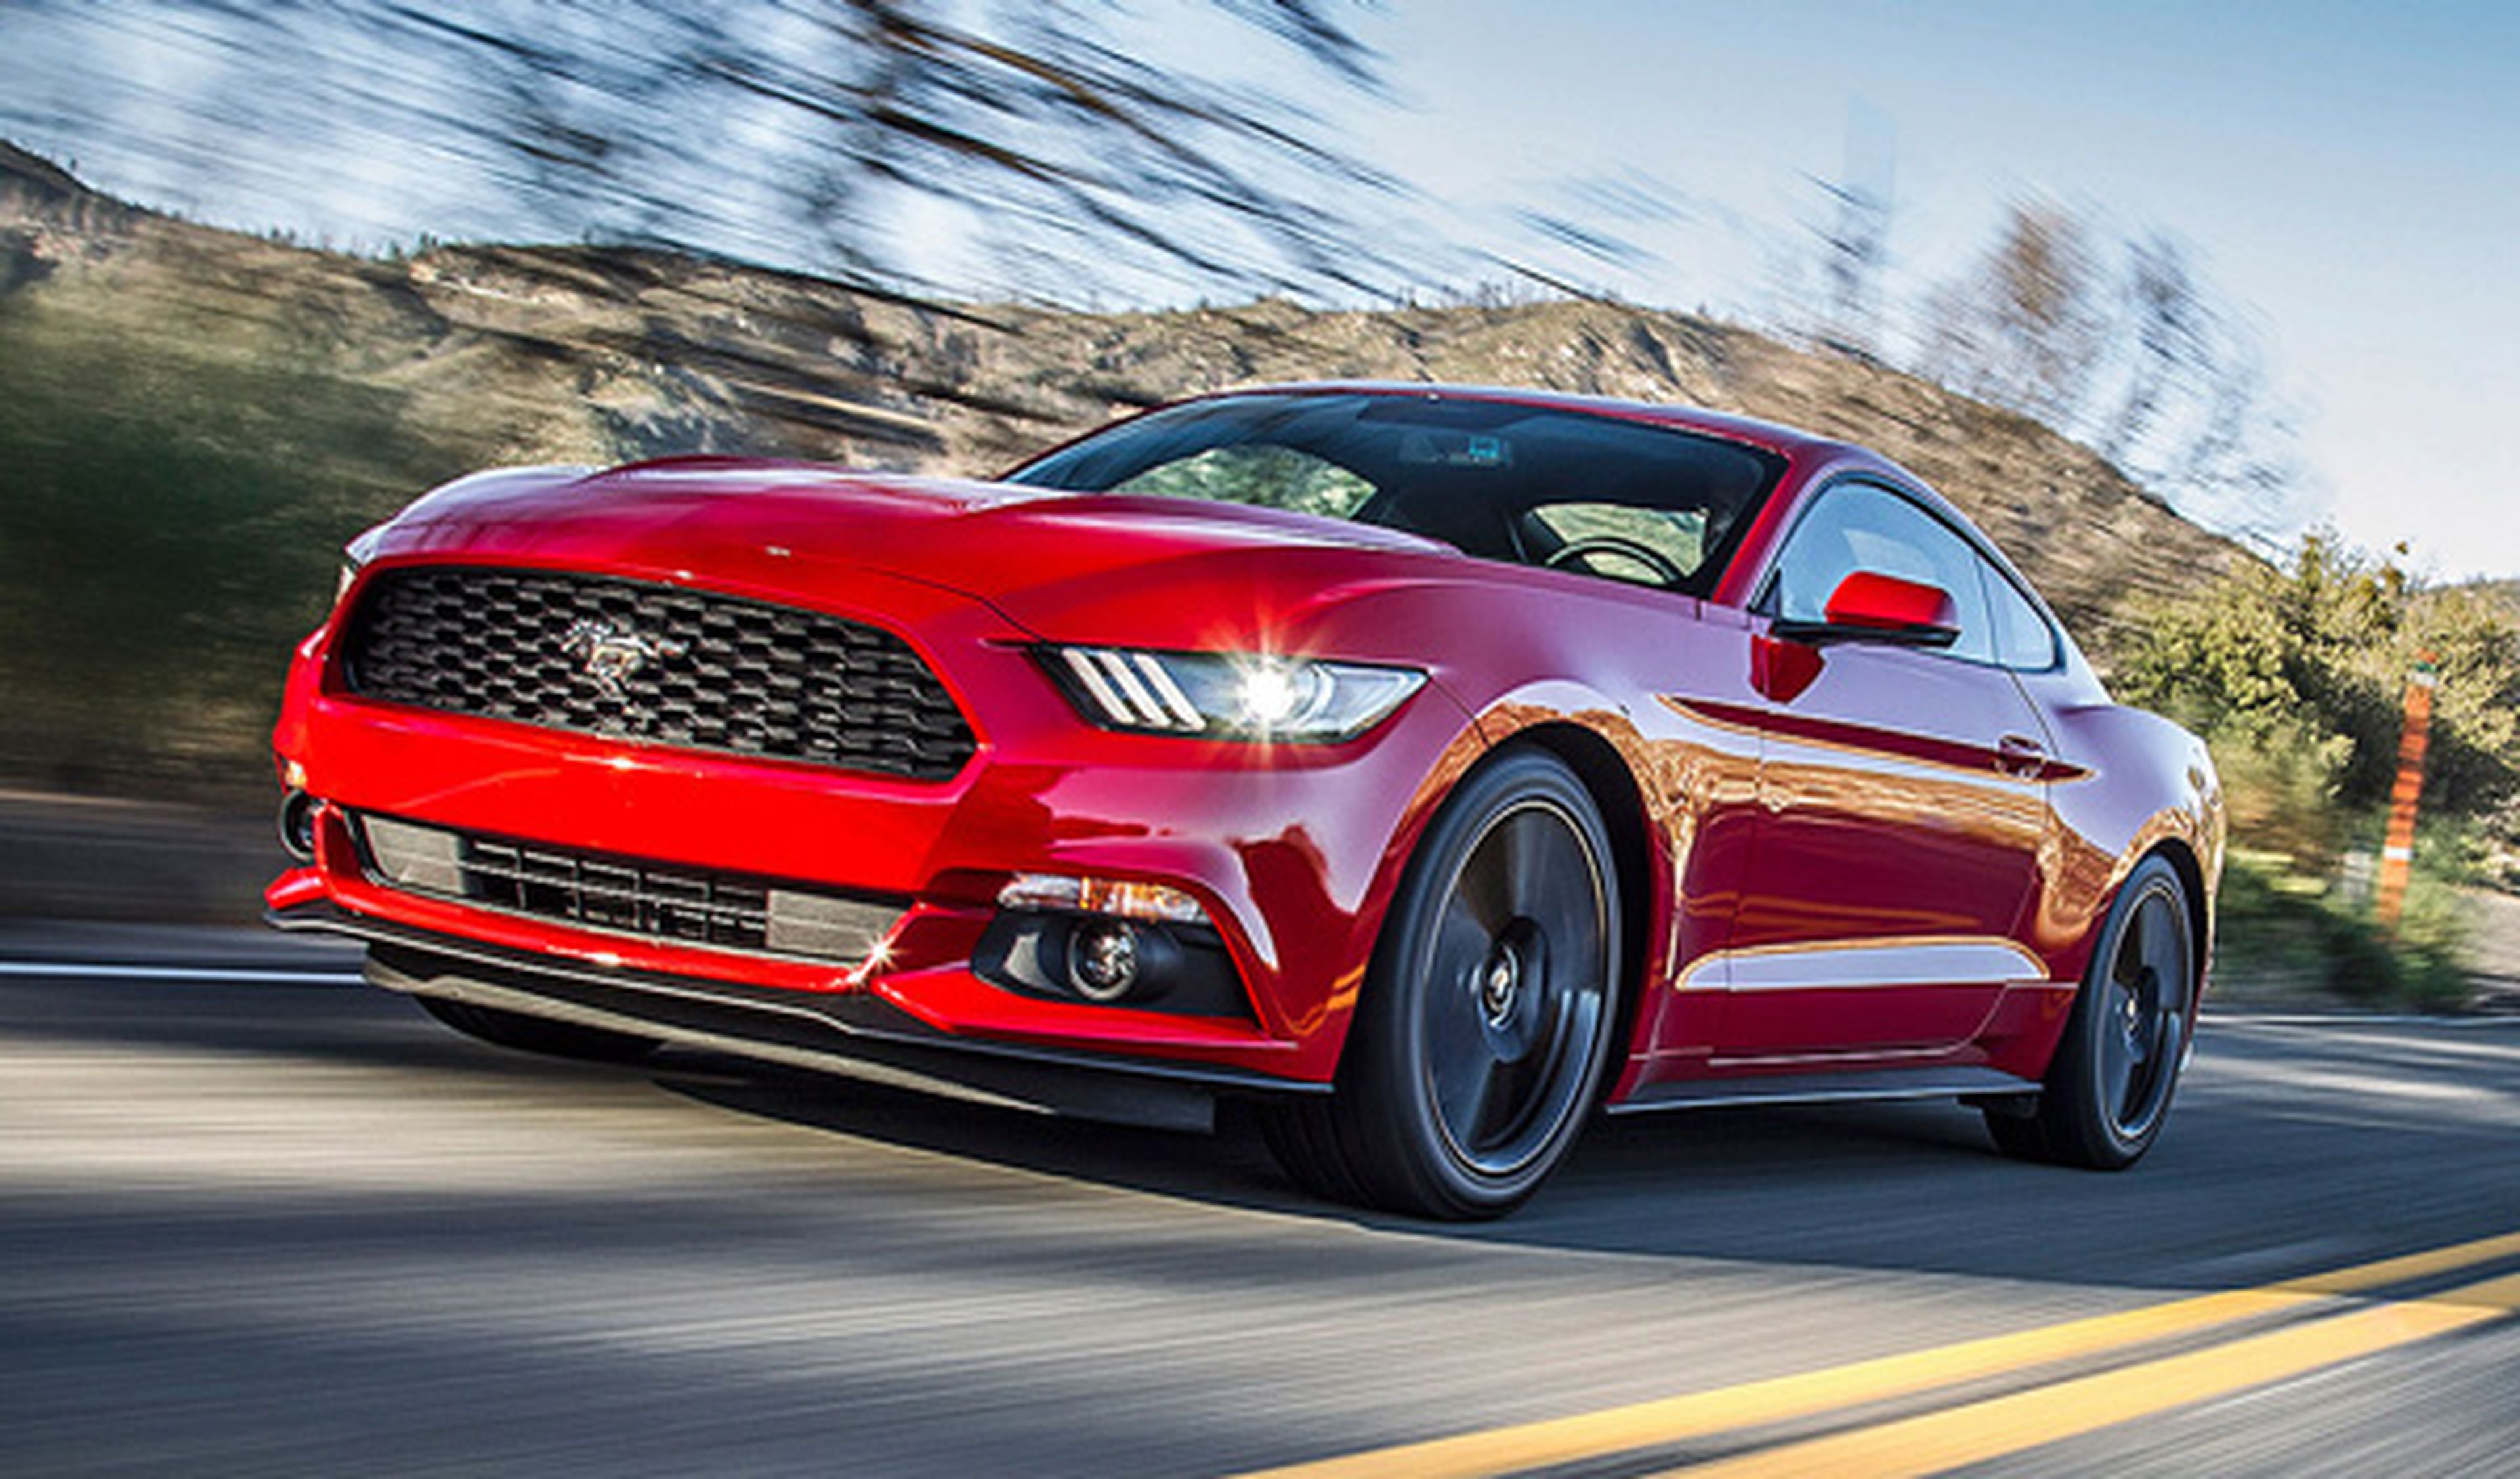 Prueba del nuevo Ford Mustang 2015